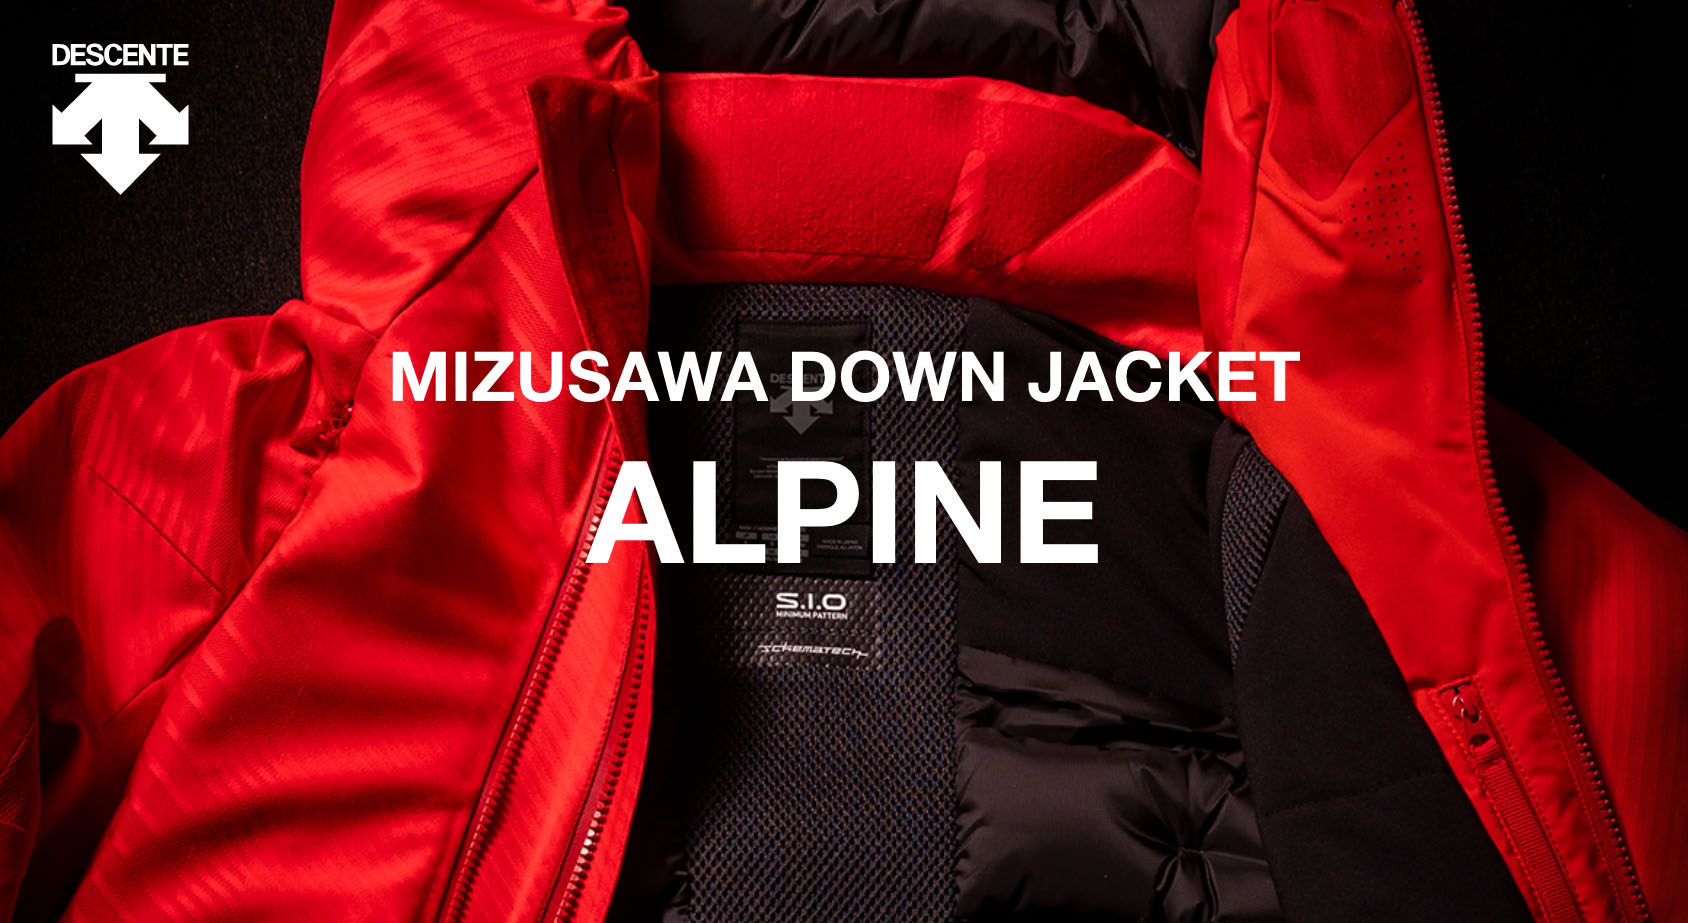 水沢ダウンジャケット アルパイン(MIZUSAWA DOWN JACKET “ALPINE 